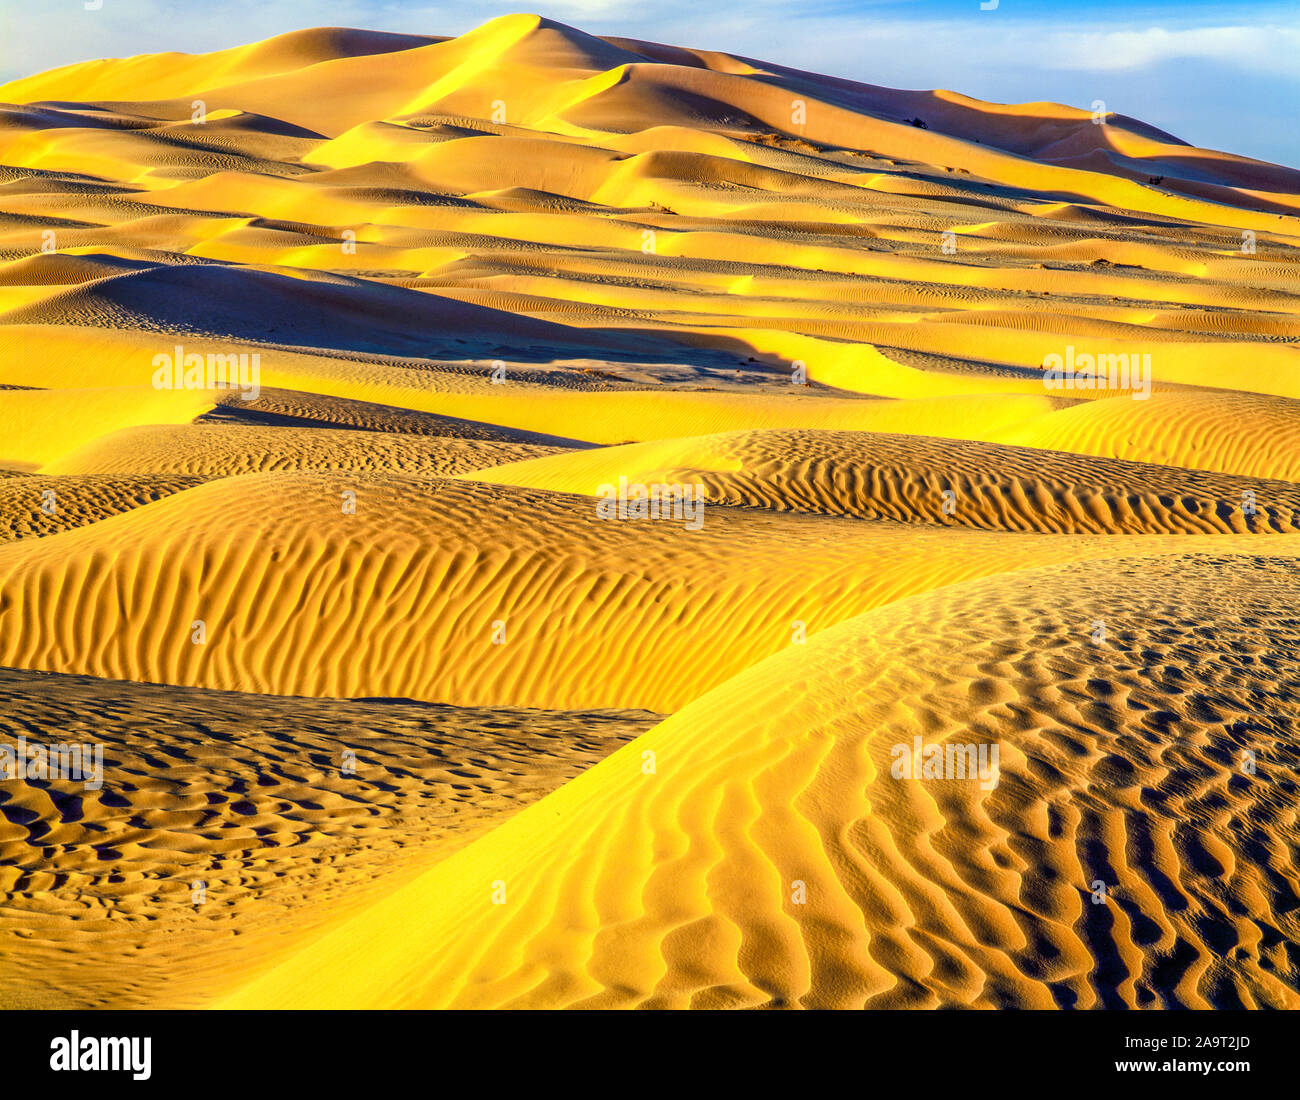 Dunes de sable de la Rub' al Khali, le quart vide, sultanat d'Oman, immense mer de sable de la péninsule arabique, l'un des plus grands déserts Banque D'Images